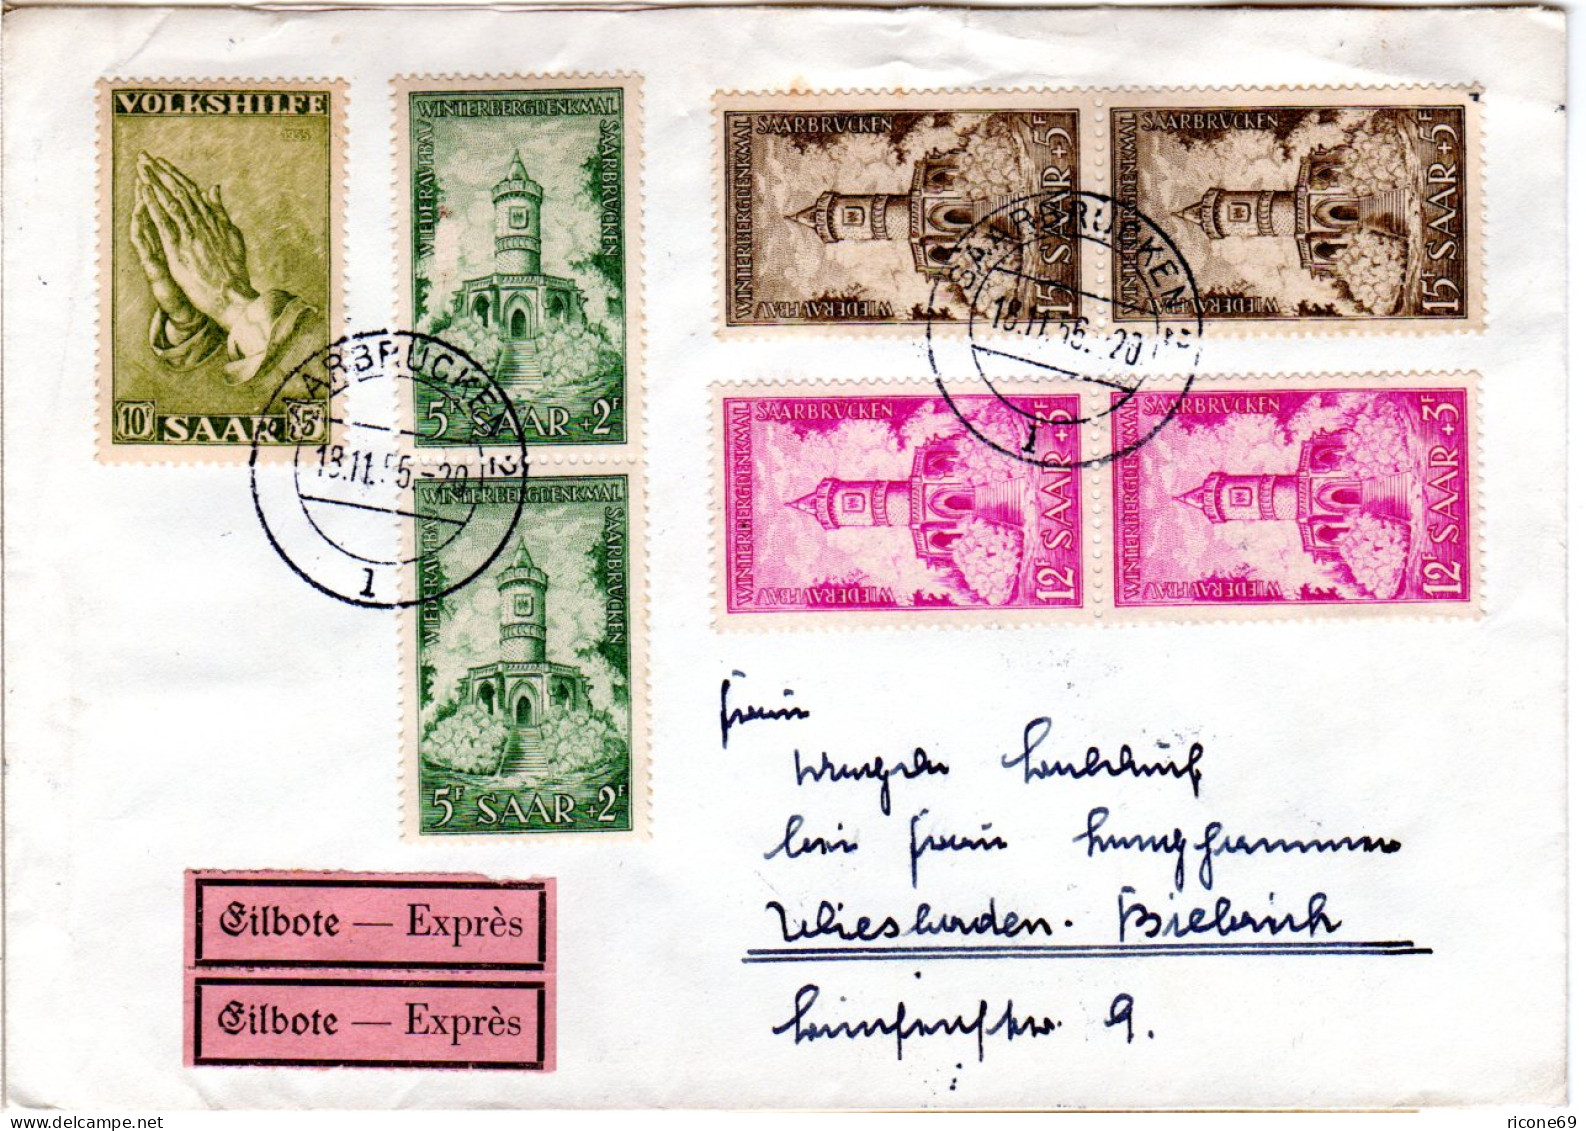 Saarland 1956, 7 Zuschlagmarken Auf Eilboten Brief V. Saarbrücken N. Wiesbaden. - Lettres & Documents